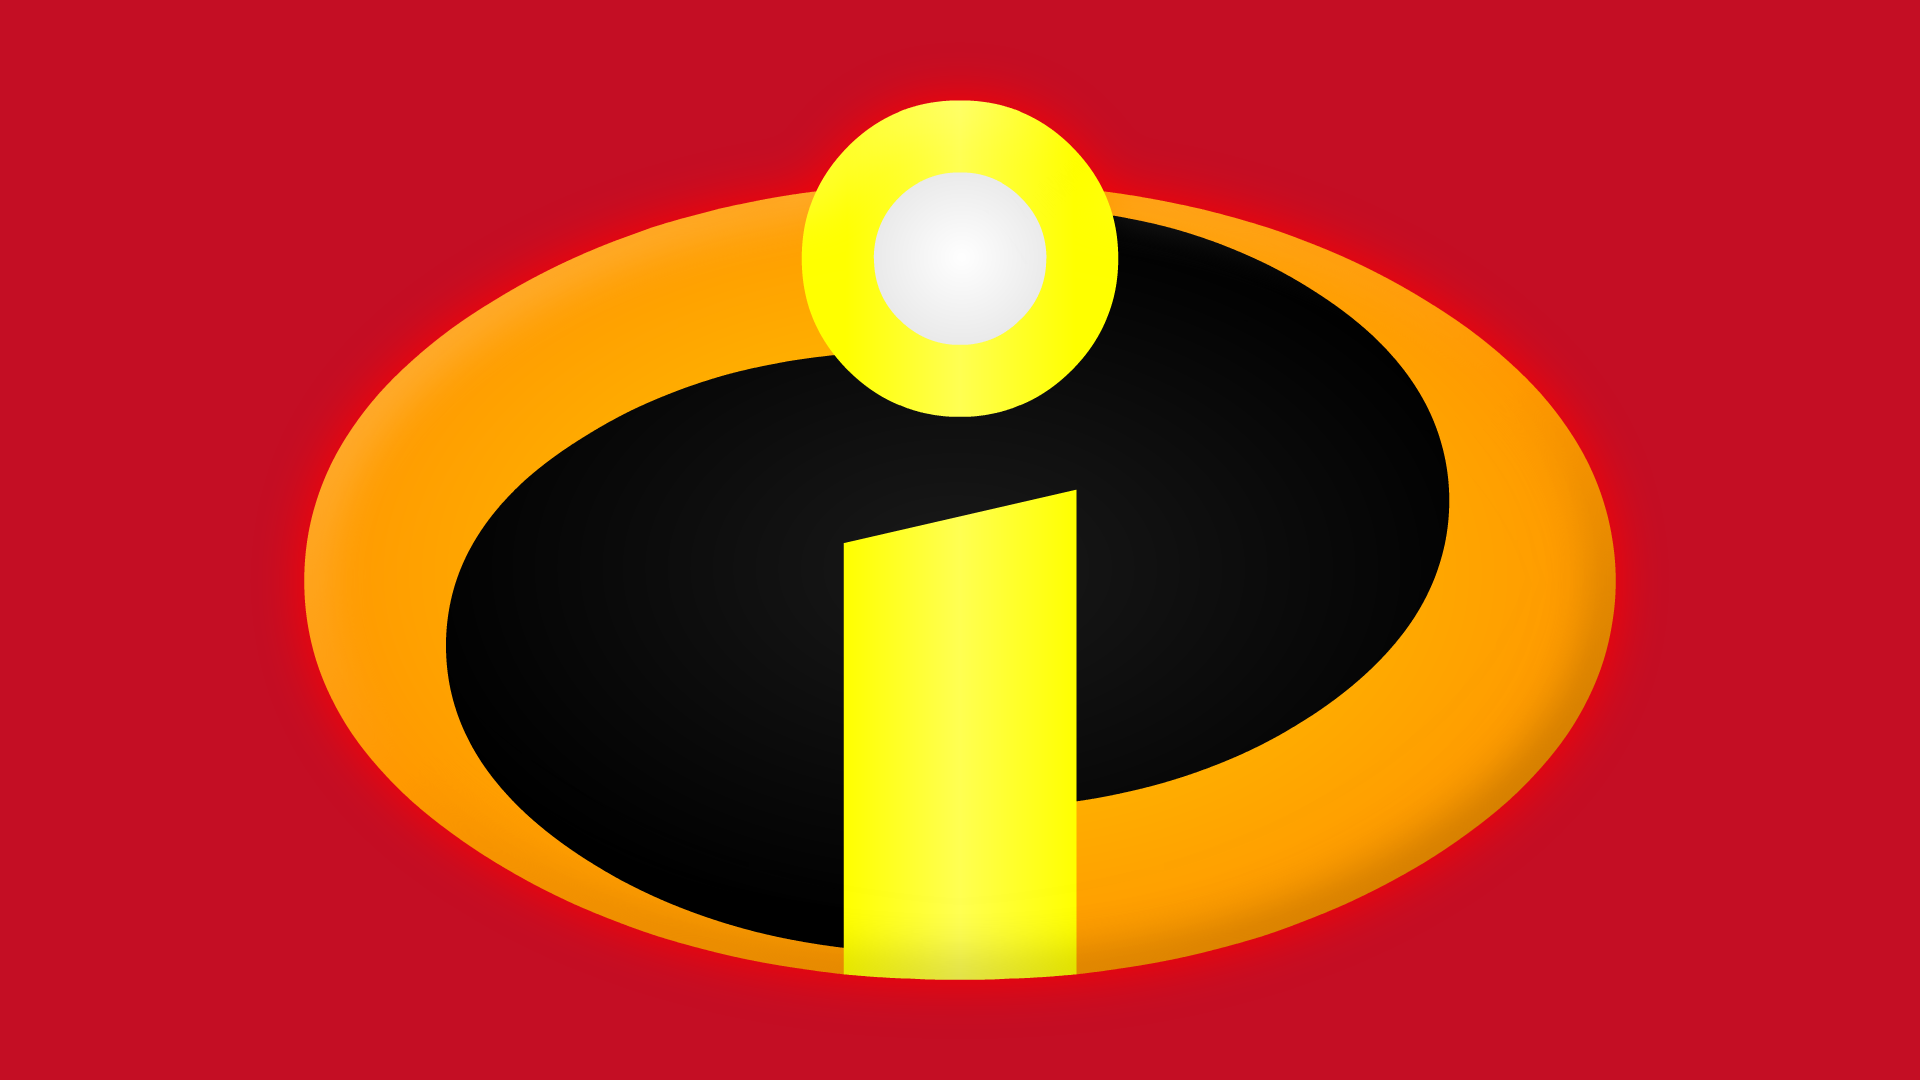 The Incredibles Symbol by Yurtigo on DeviantArt